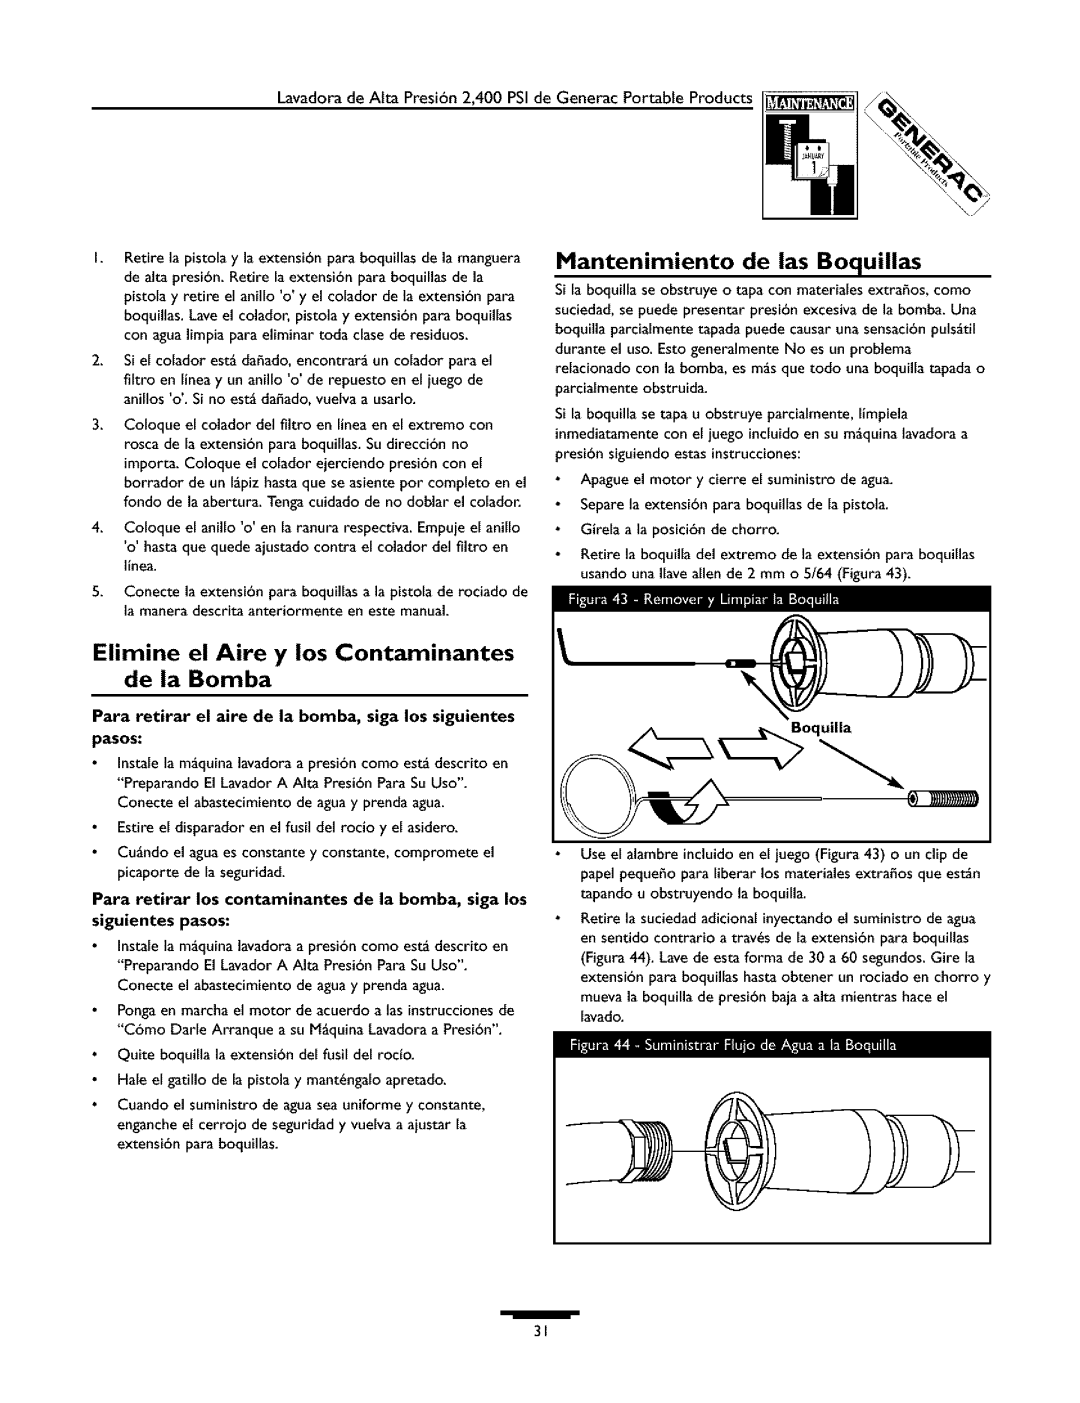 Generac 1537-0 owner manual Elimine el Aire y los Contaminantes de la Bomba, Mantenimiento de las Boquillas 